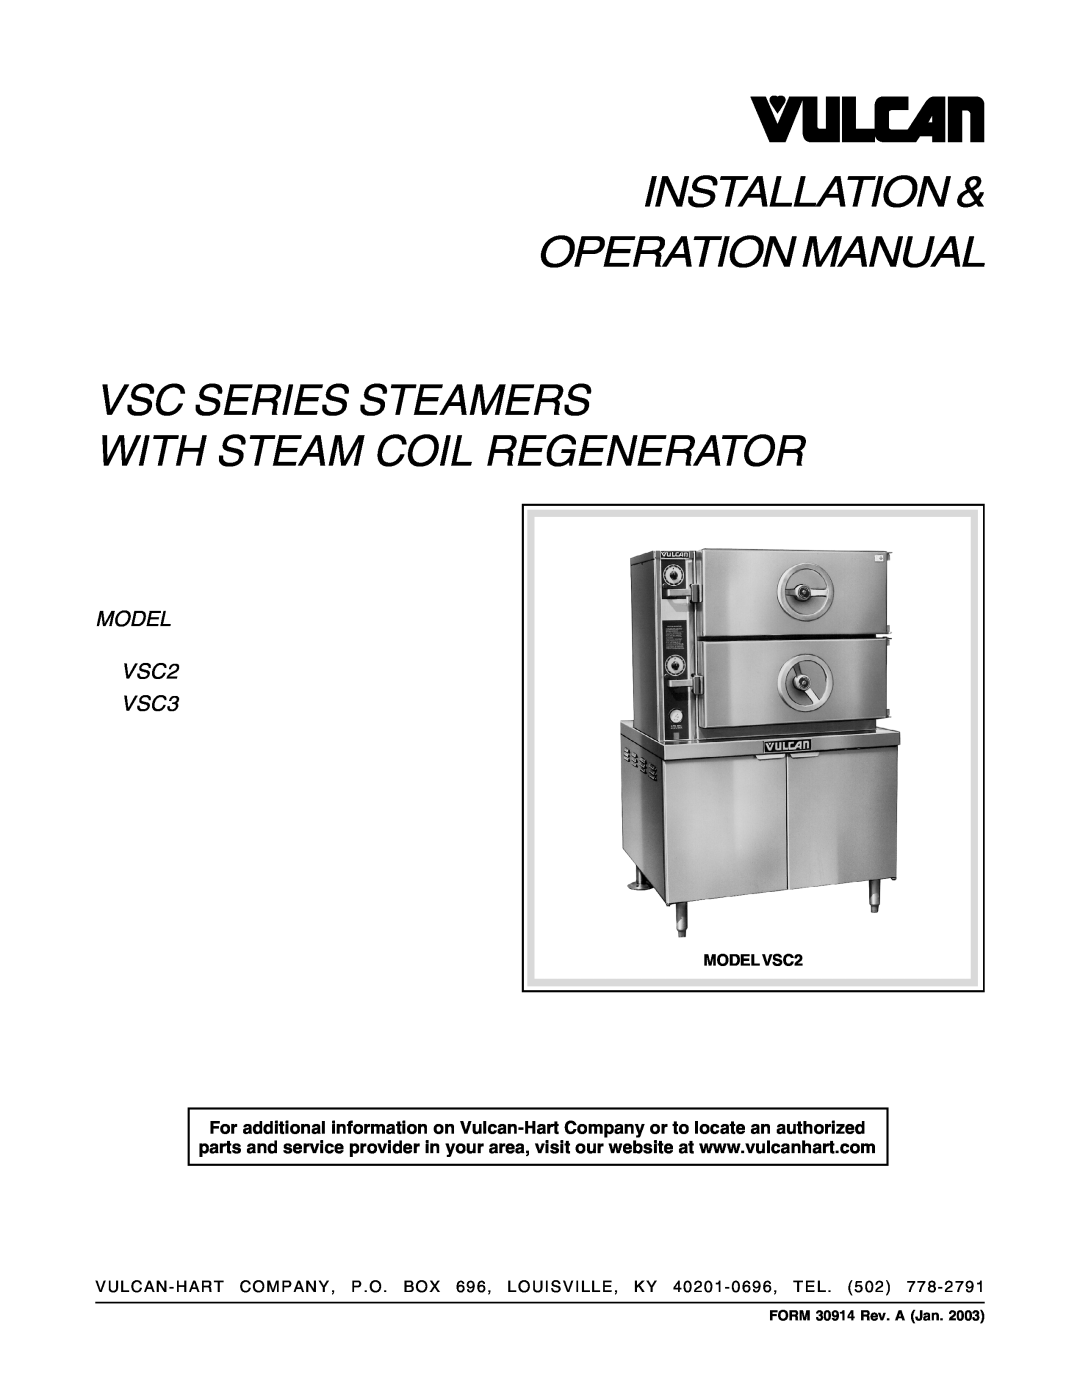 Vulcan-Hart operation manual Vsc Series Steamers With Steam Coil Regenerator, MODEL VSC2 VSC3, FORM 30914 Rev. A Jan 